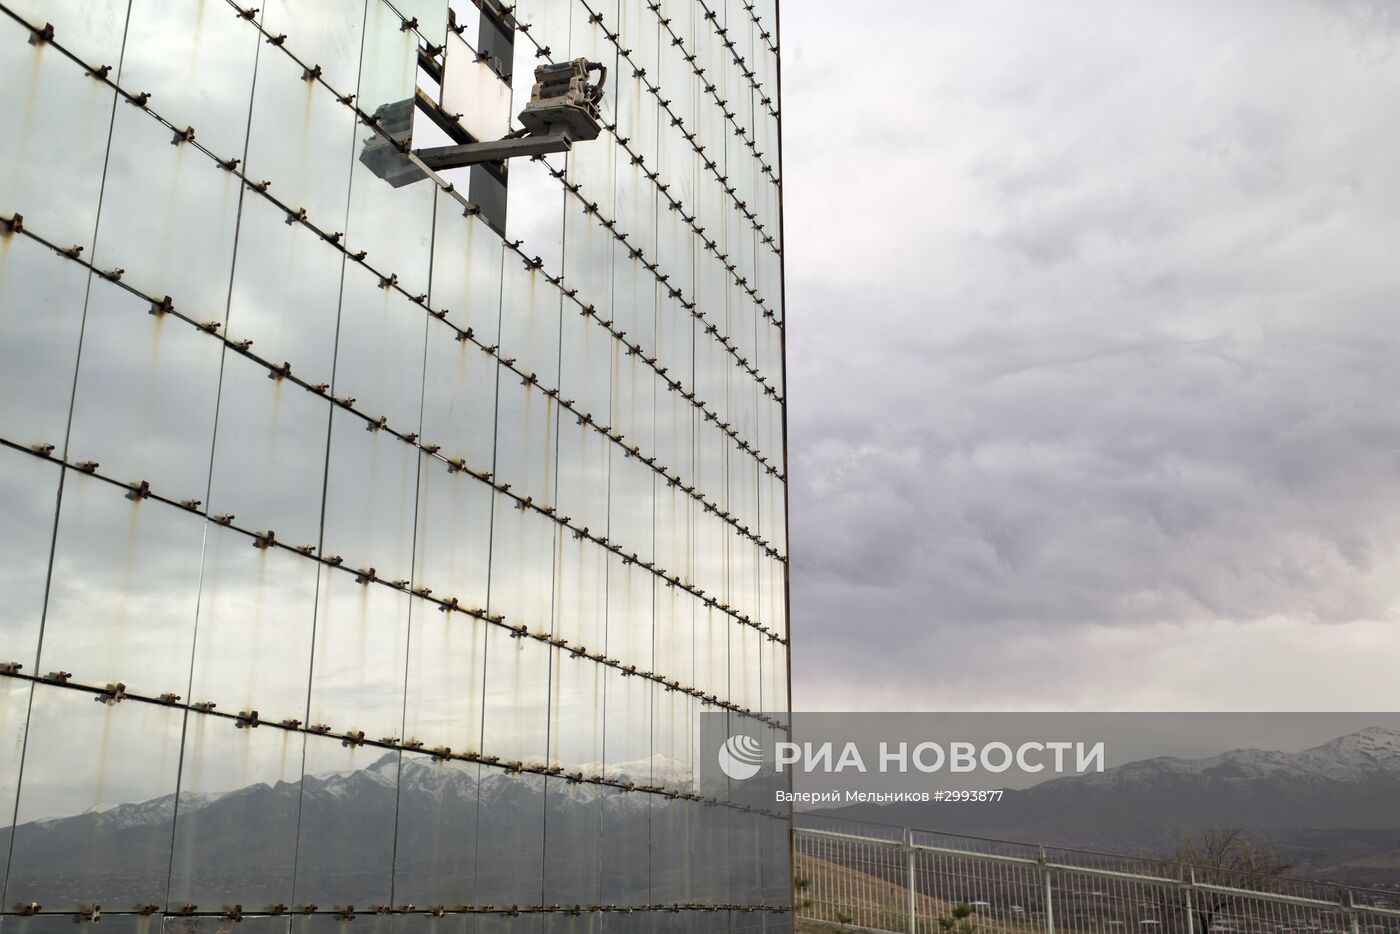 Физико-технический институт НПО "Физика-Солнце" в Узбекистане